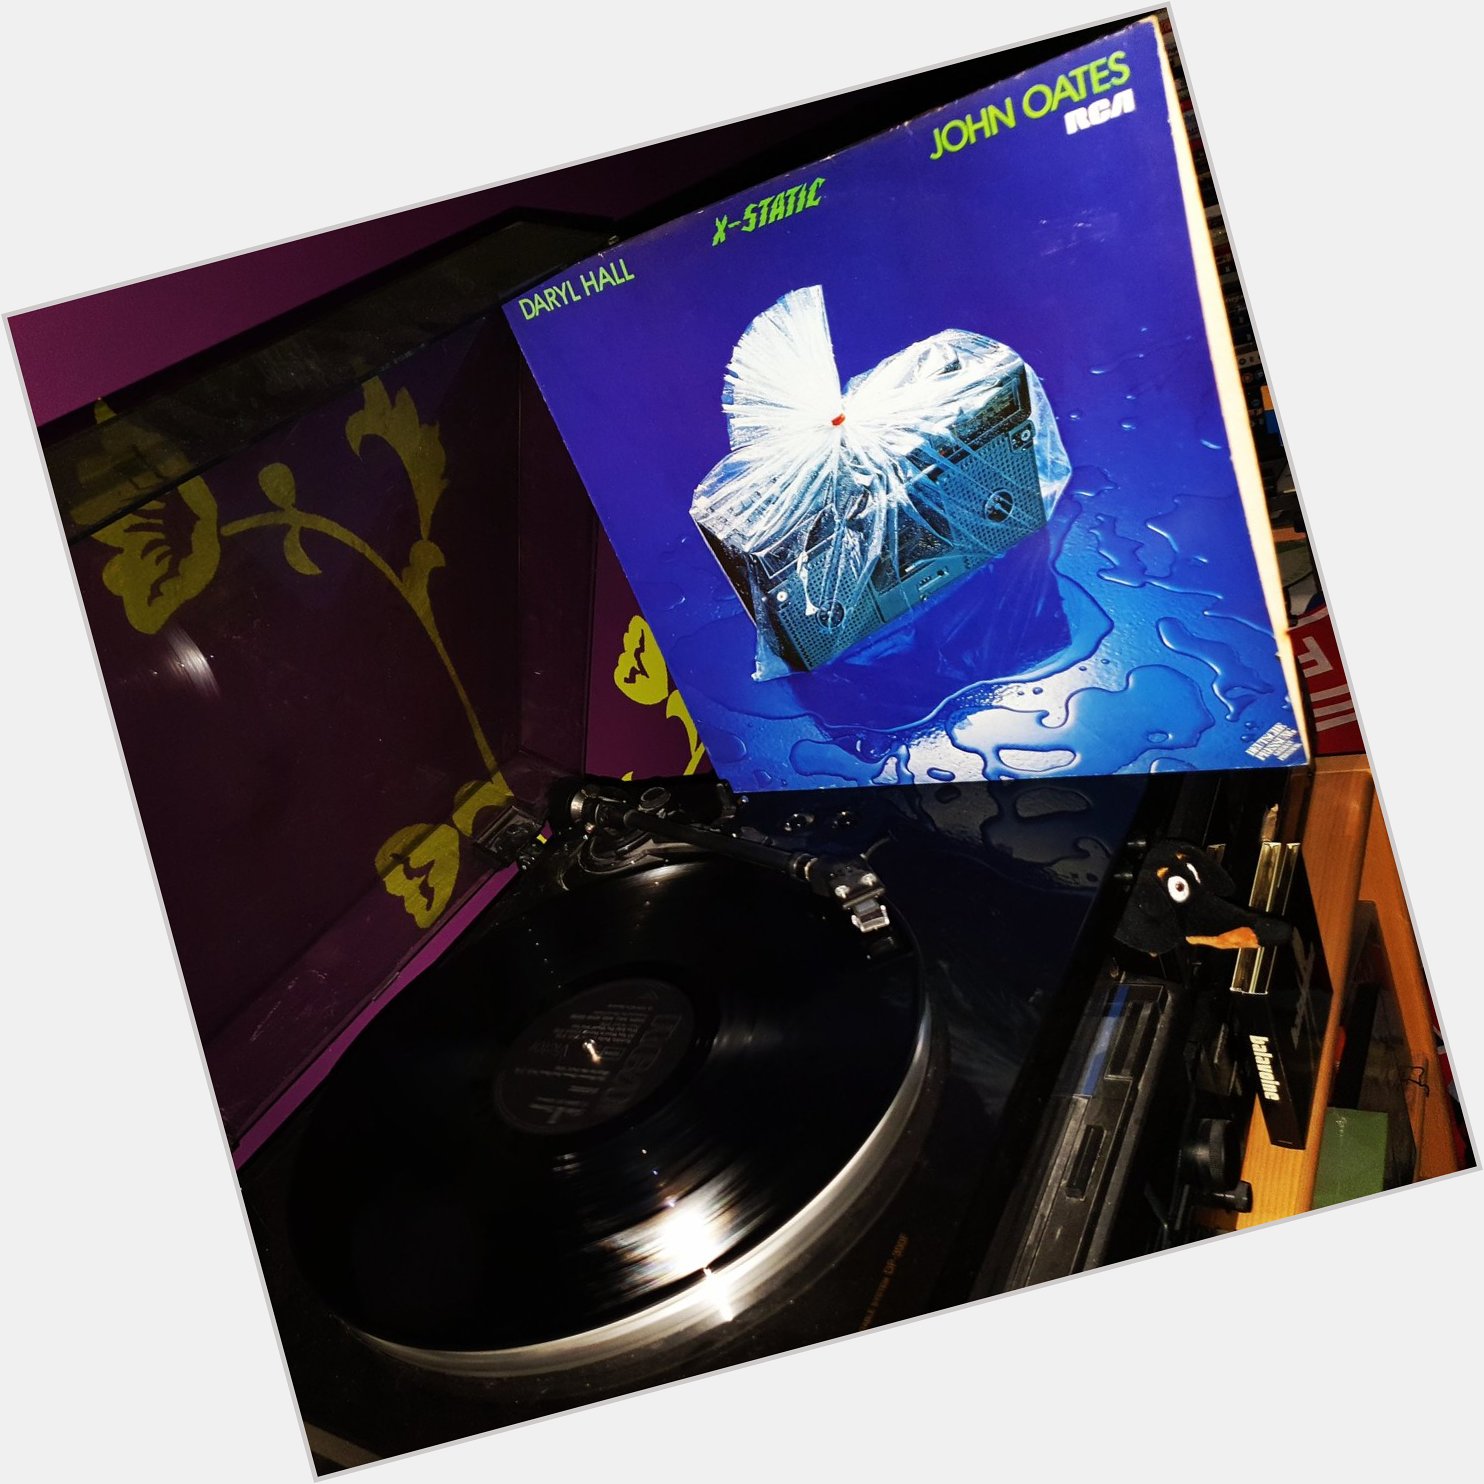 Happy Birthday John Oates *72*!
Daryl Hall & John Oates - X-Static 
(RCA/1980)  